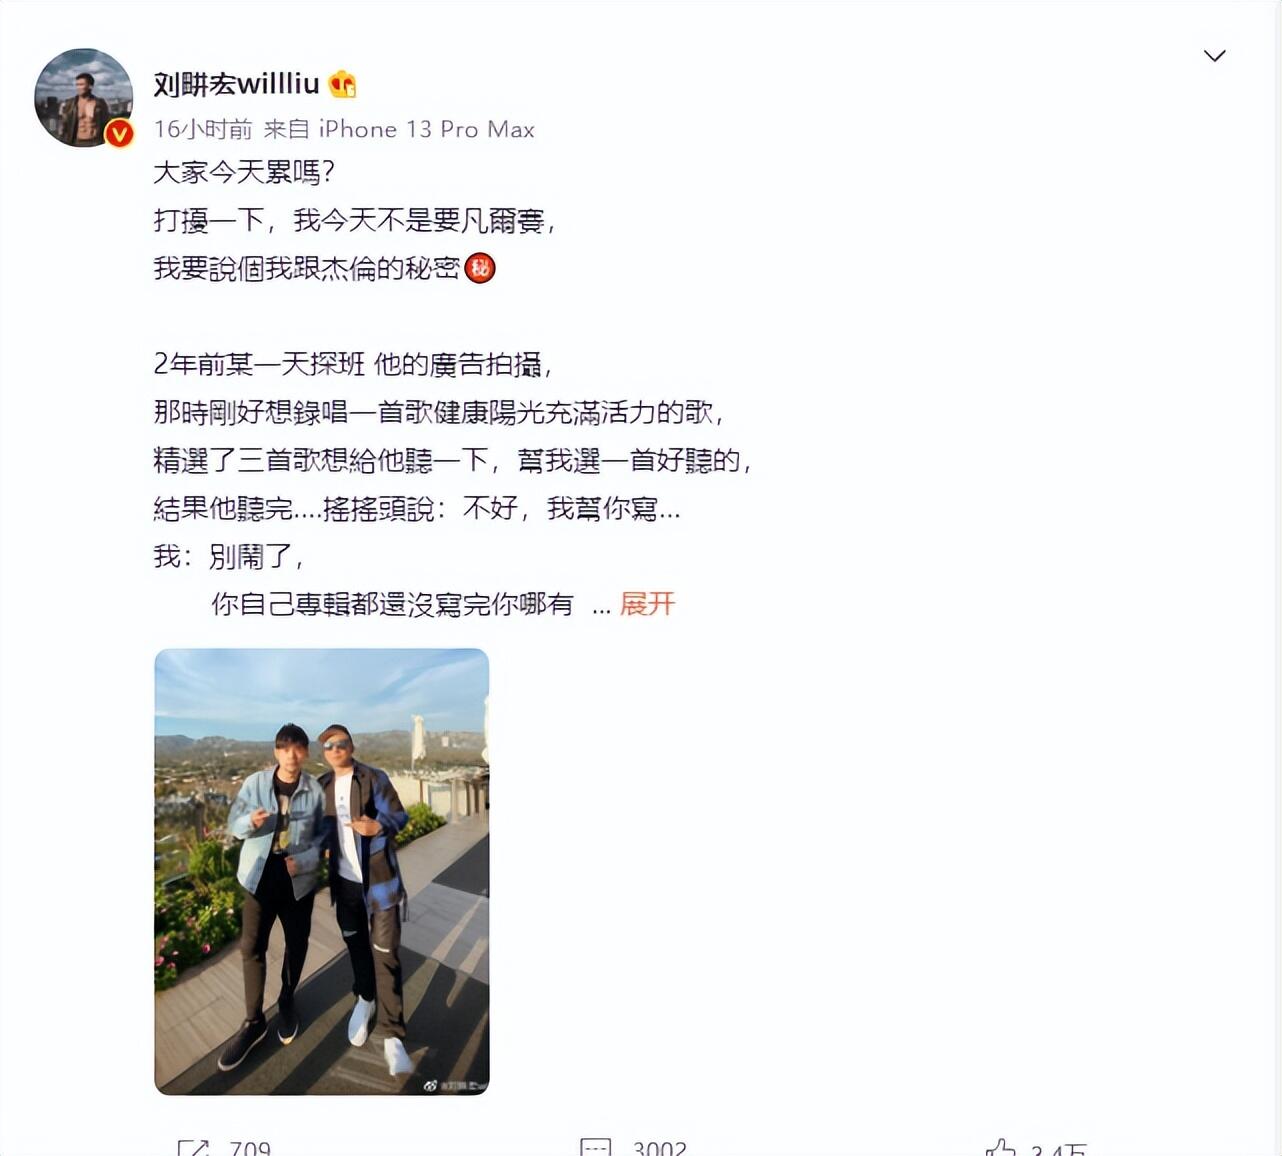 刘畊宏说周杰伦留给他的歌不多了是怎么回事，关于刘畊宏和周杰伦的歌曲的新消息。